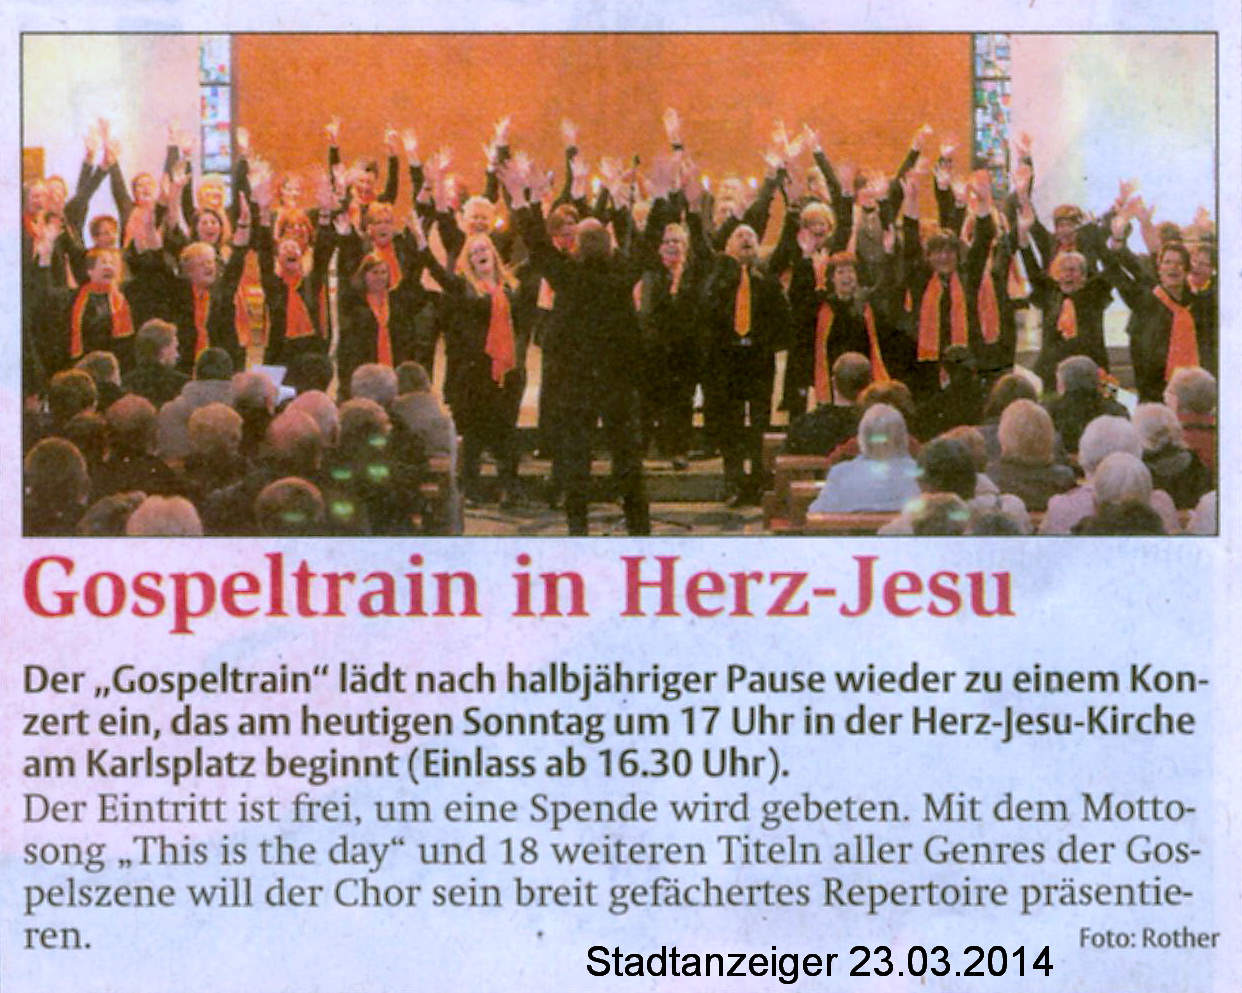 © Stadtanzeiger, Hamm, 23.03.2014